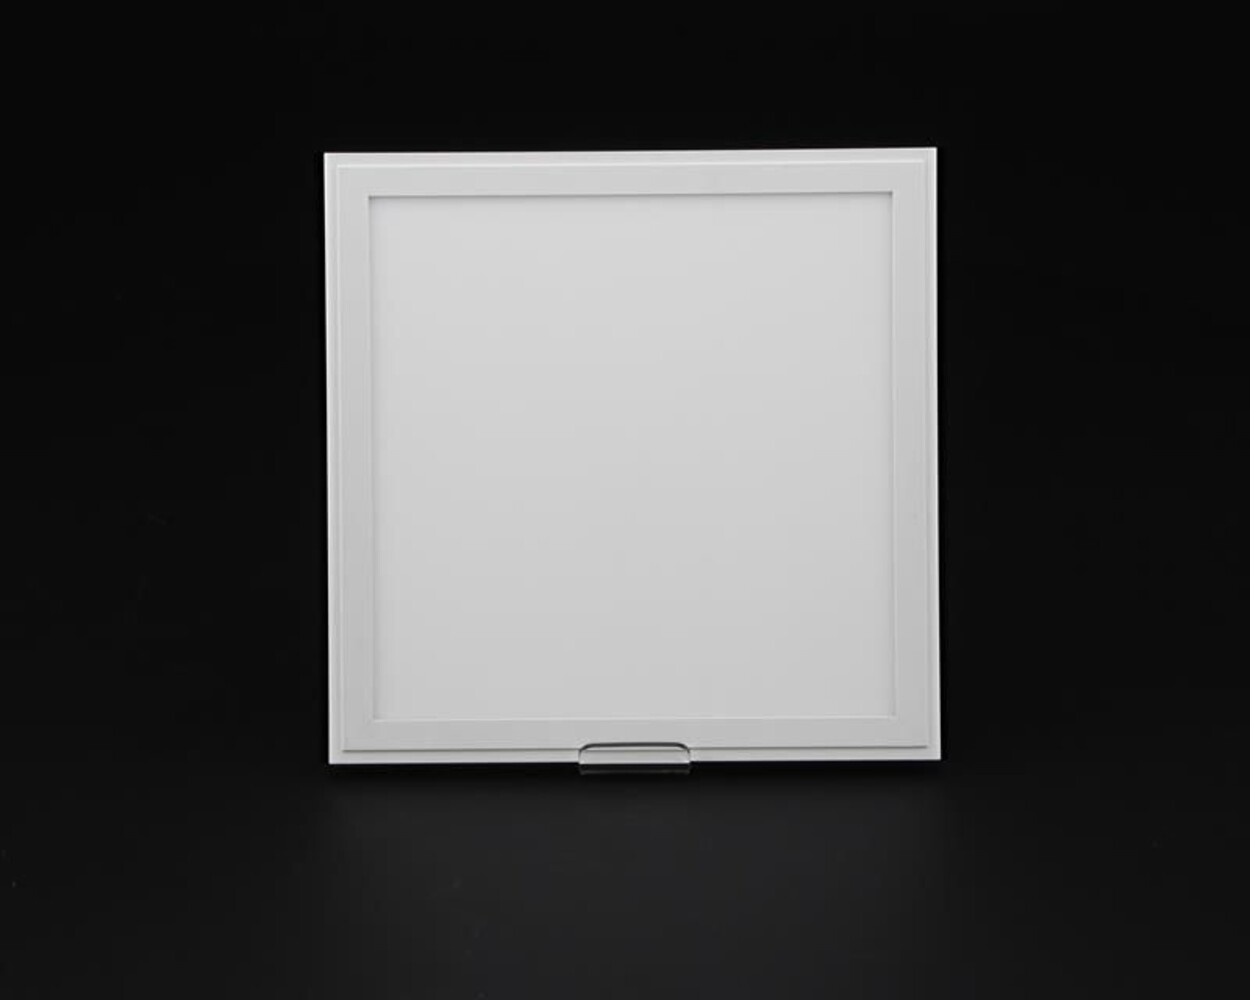 Stilvolles, energieeffizientes LED Panel von der Marke Deko-Light